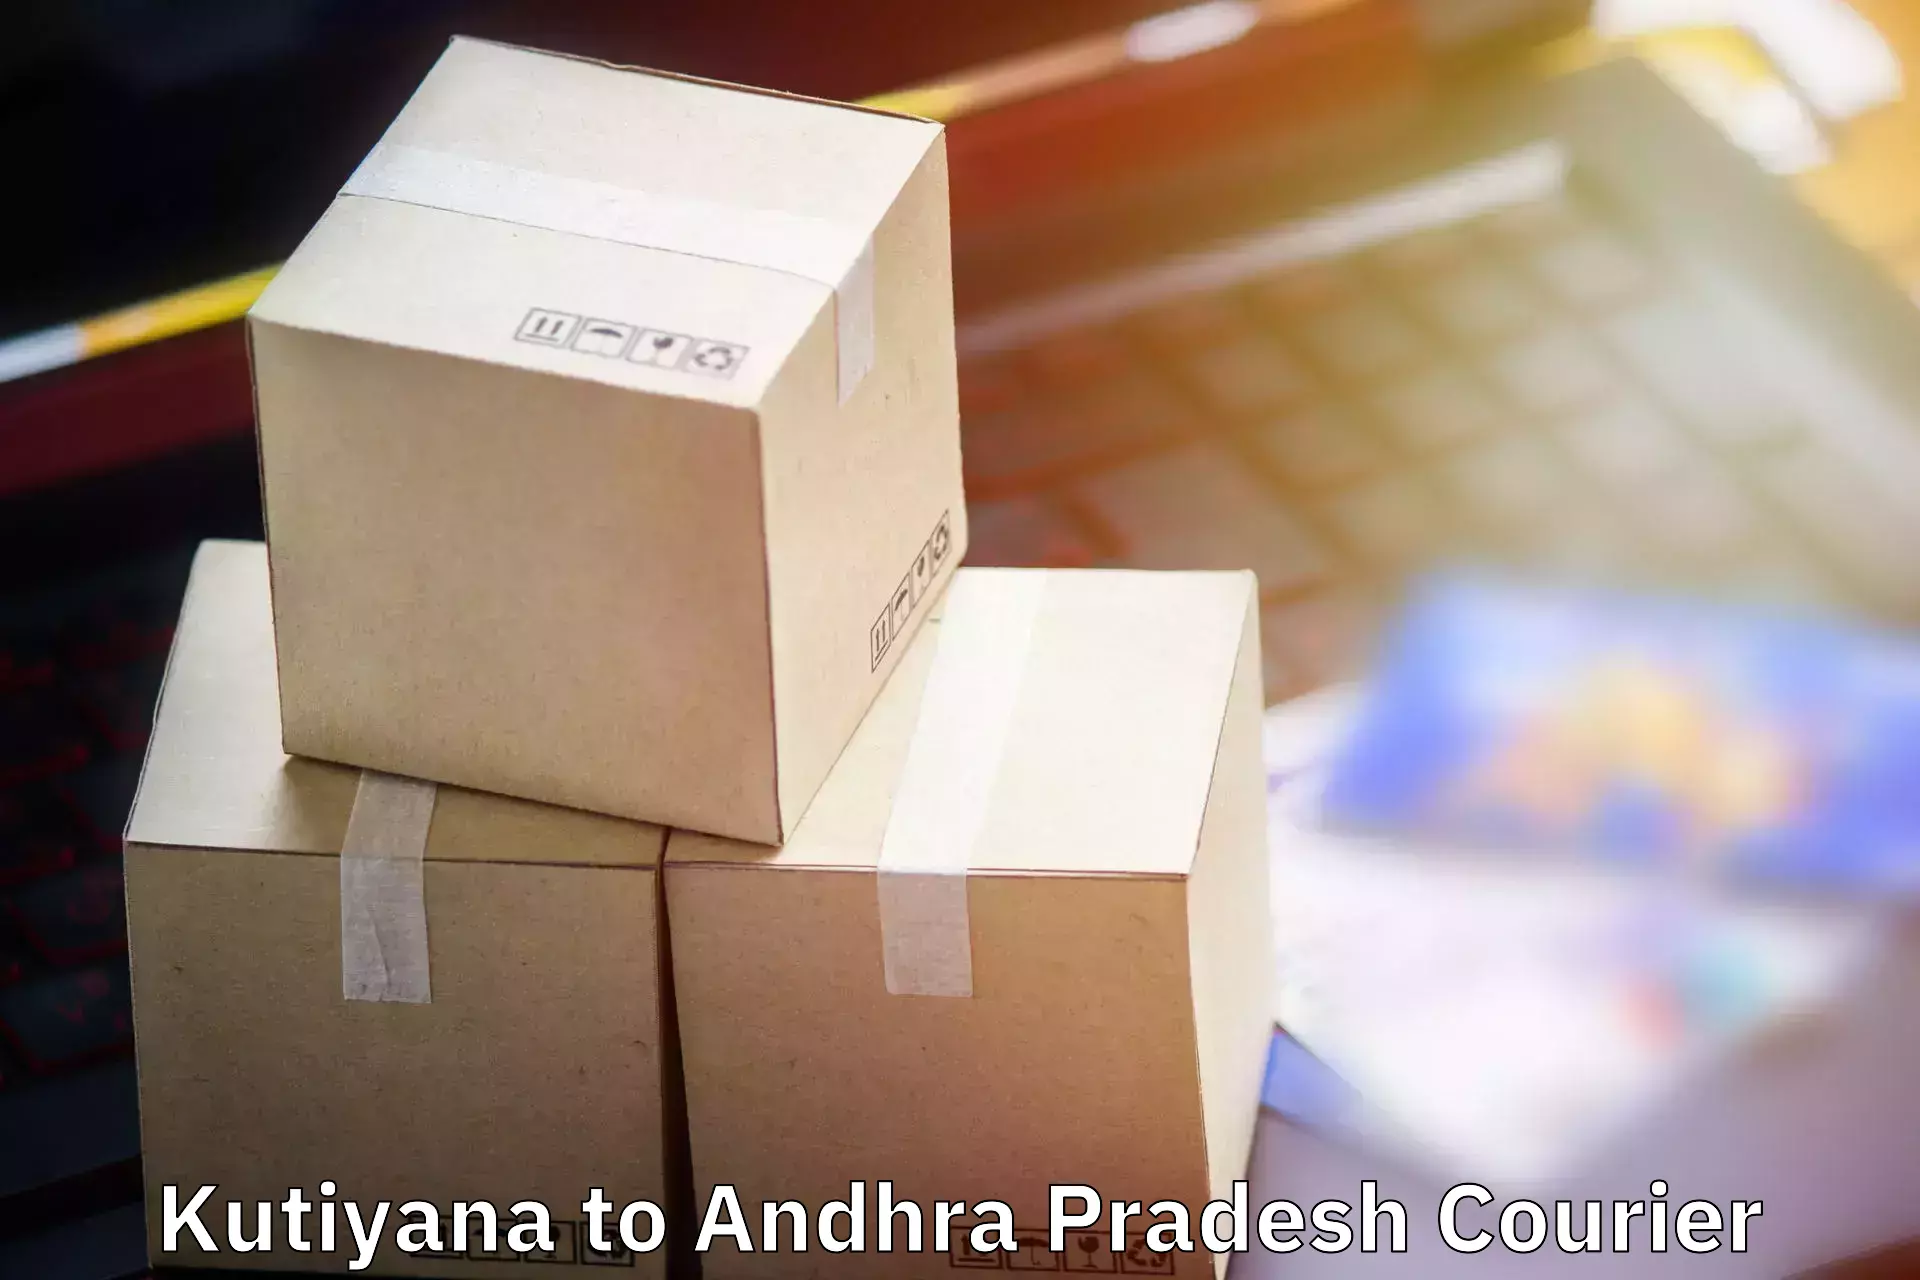 Baggage shipping experts Kutiyana to Andhra Pradesh